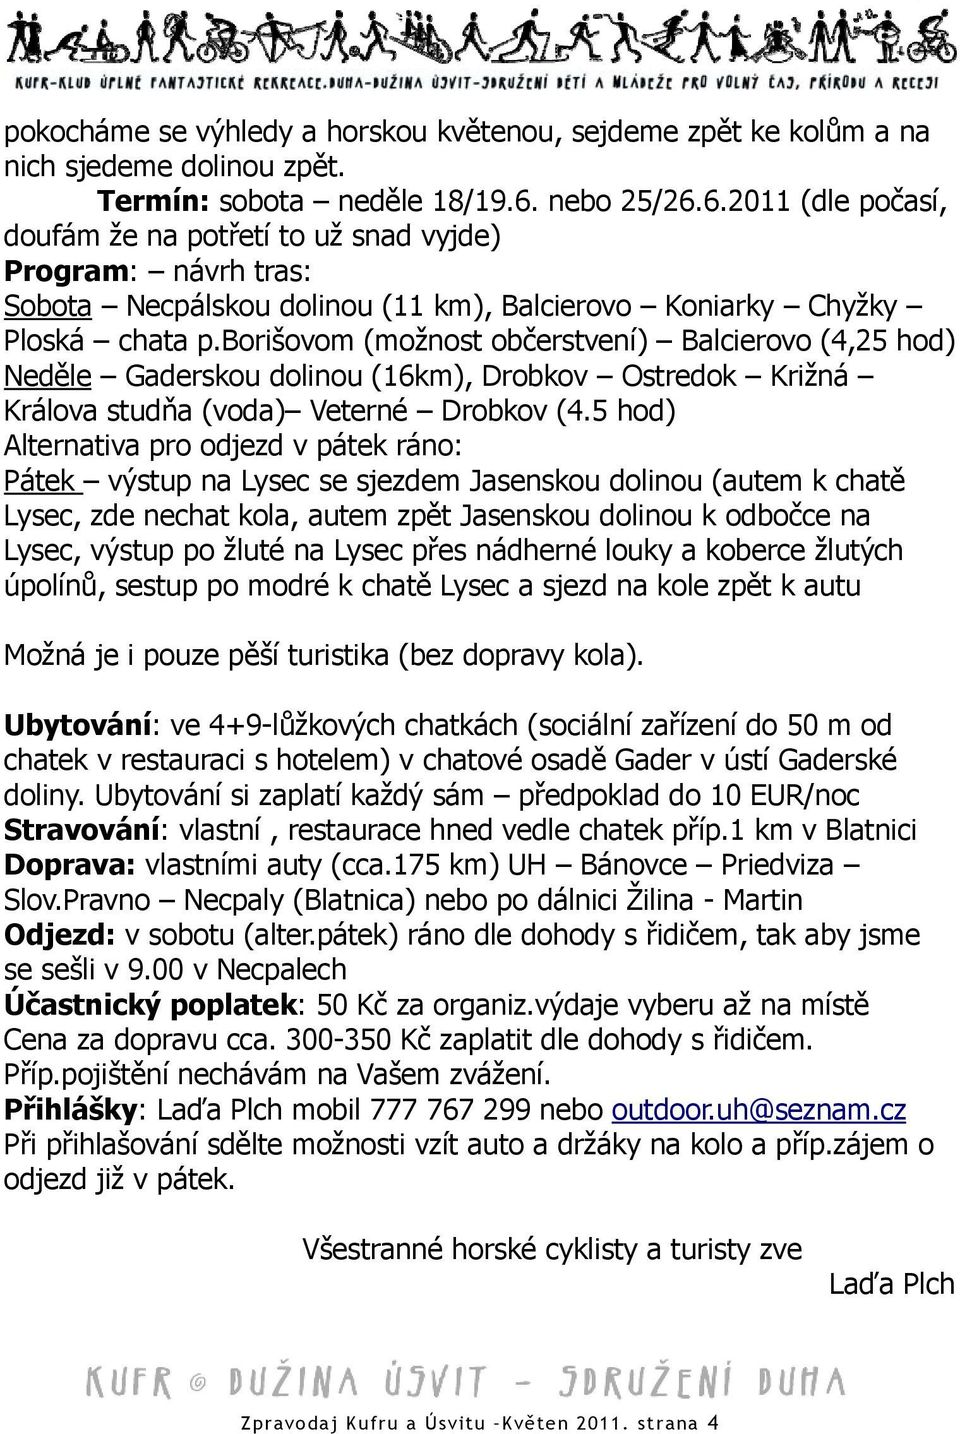 borišovom (možnost občerstvení) Balcierovo (4,25 hod) Neděle Gaderskou dolinou (16km), Drobkov Ostredok Križná Králova studňa (voda) Veterné Drobkov (4.